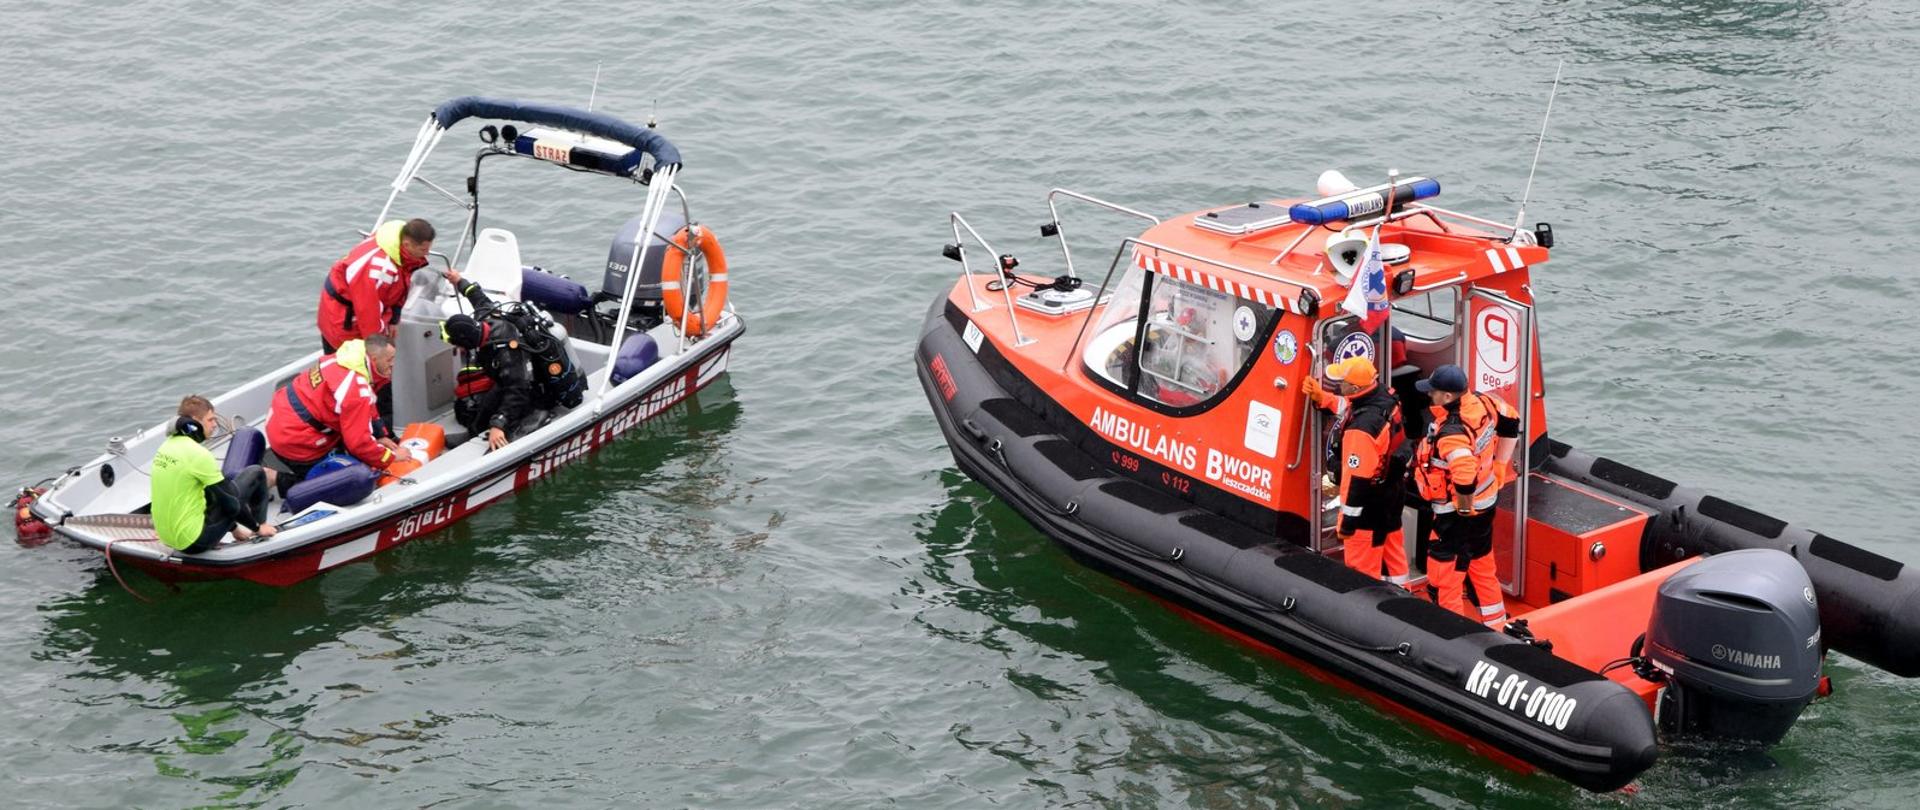 Dwie motorowe łodzie ratownicze na jeziorze. Jedna z nich to łódź Państwowej Straży Pożarnej, druga, to ambulans Bieszczadzkiego Wodnego Ochotniczego Pogotowia Ratunkowego.